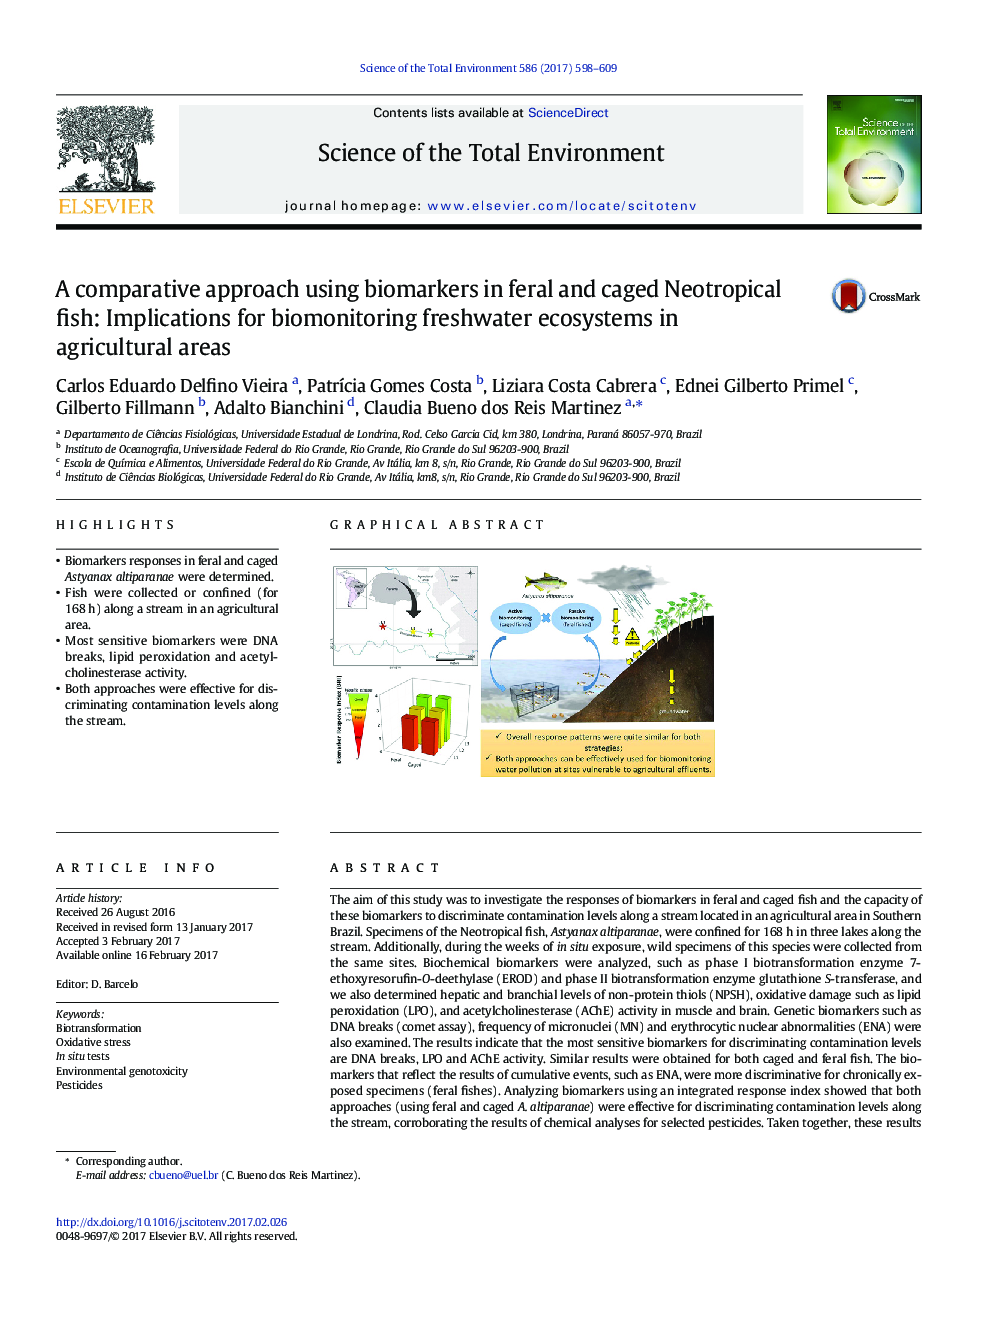 یک رویکرد مقایسه ای با استفاده از نشانگرهای بیولوژیک در ماهی های نئوتروپیک ناهمواری و غیره: اثرات بیومونیتی بر اکوسیستم های آب شیرین در مناطق کشاورزی 